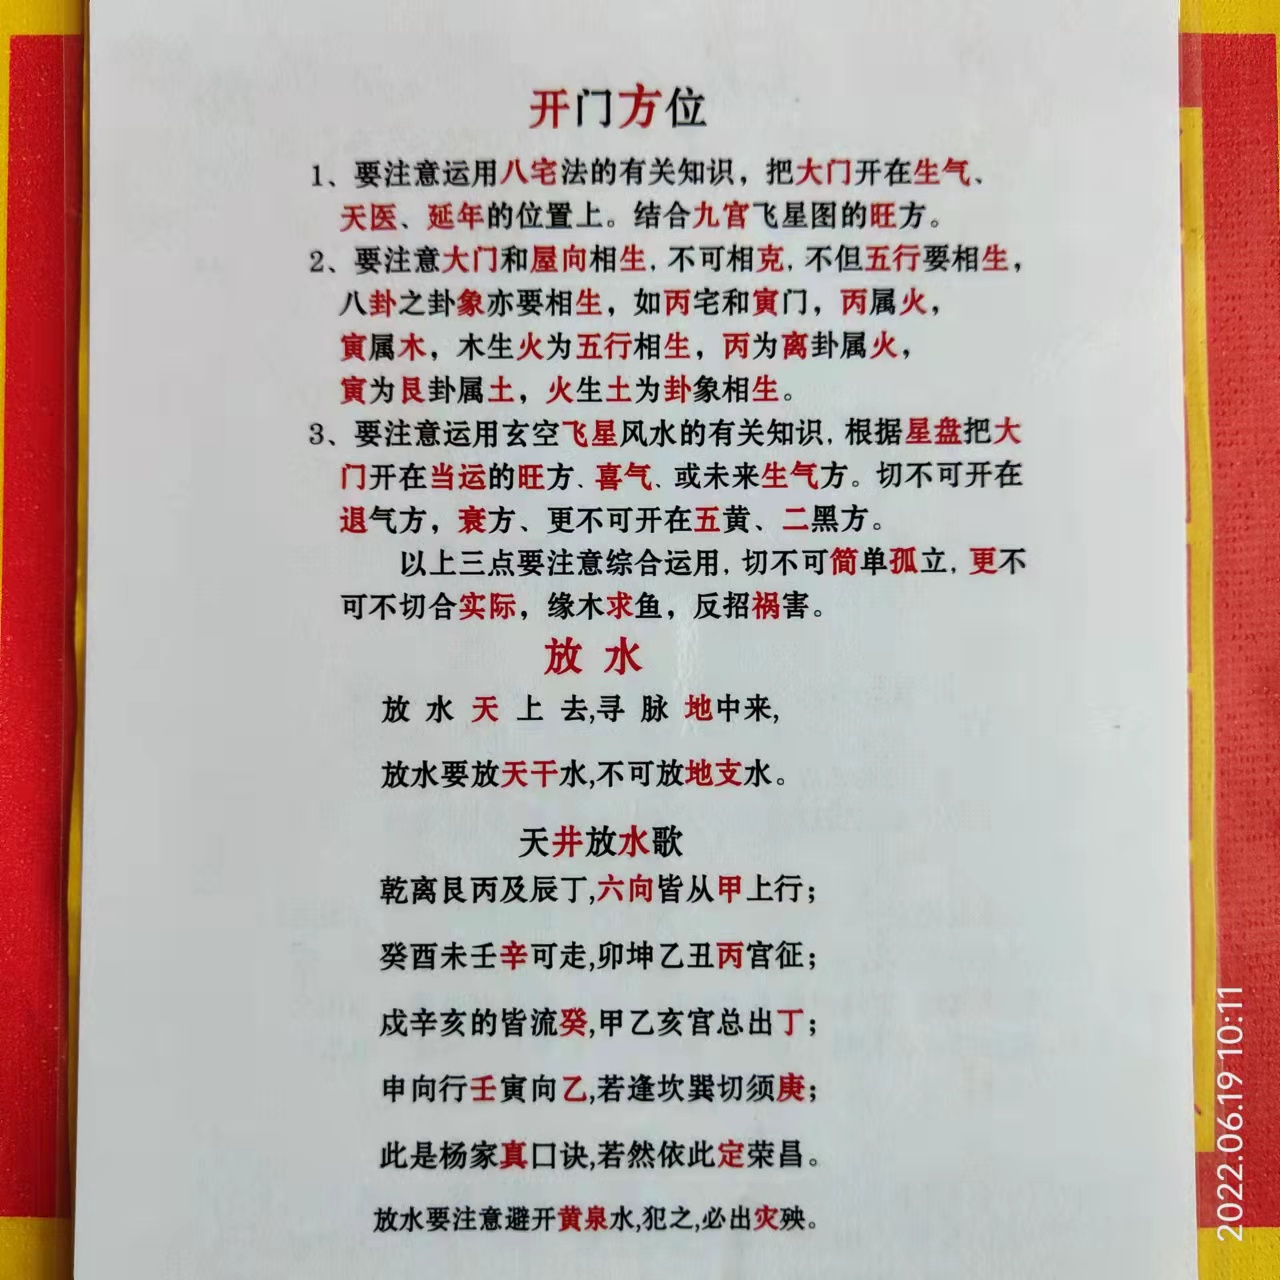 蒋加旺老师入驻全球影响力时代华人网